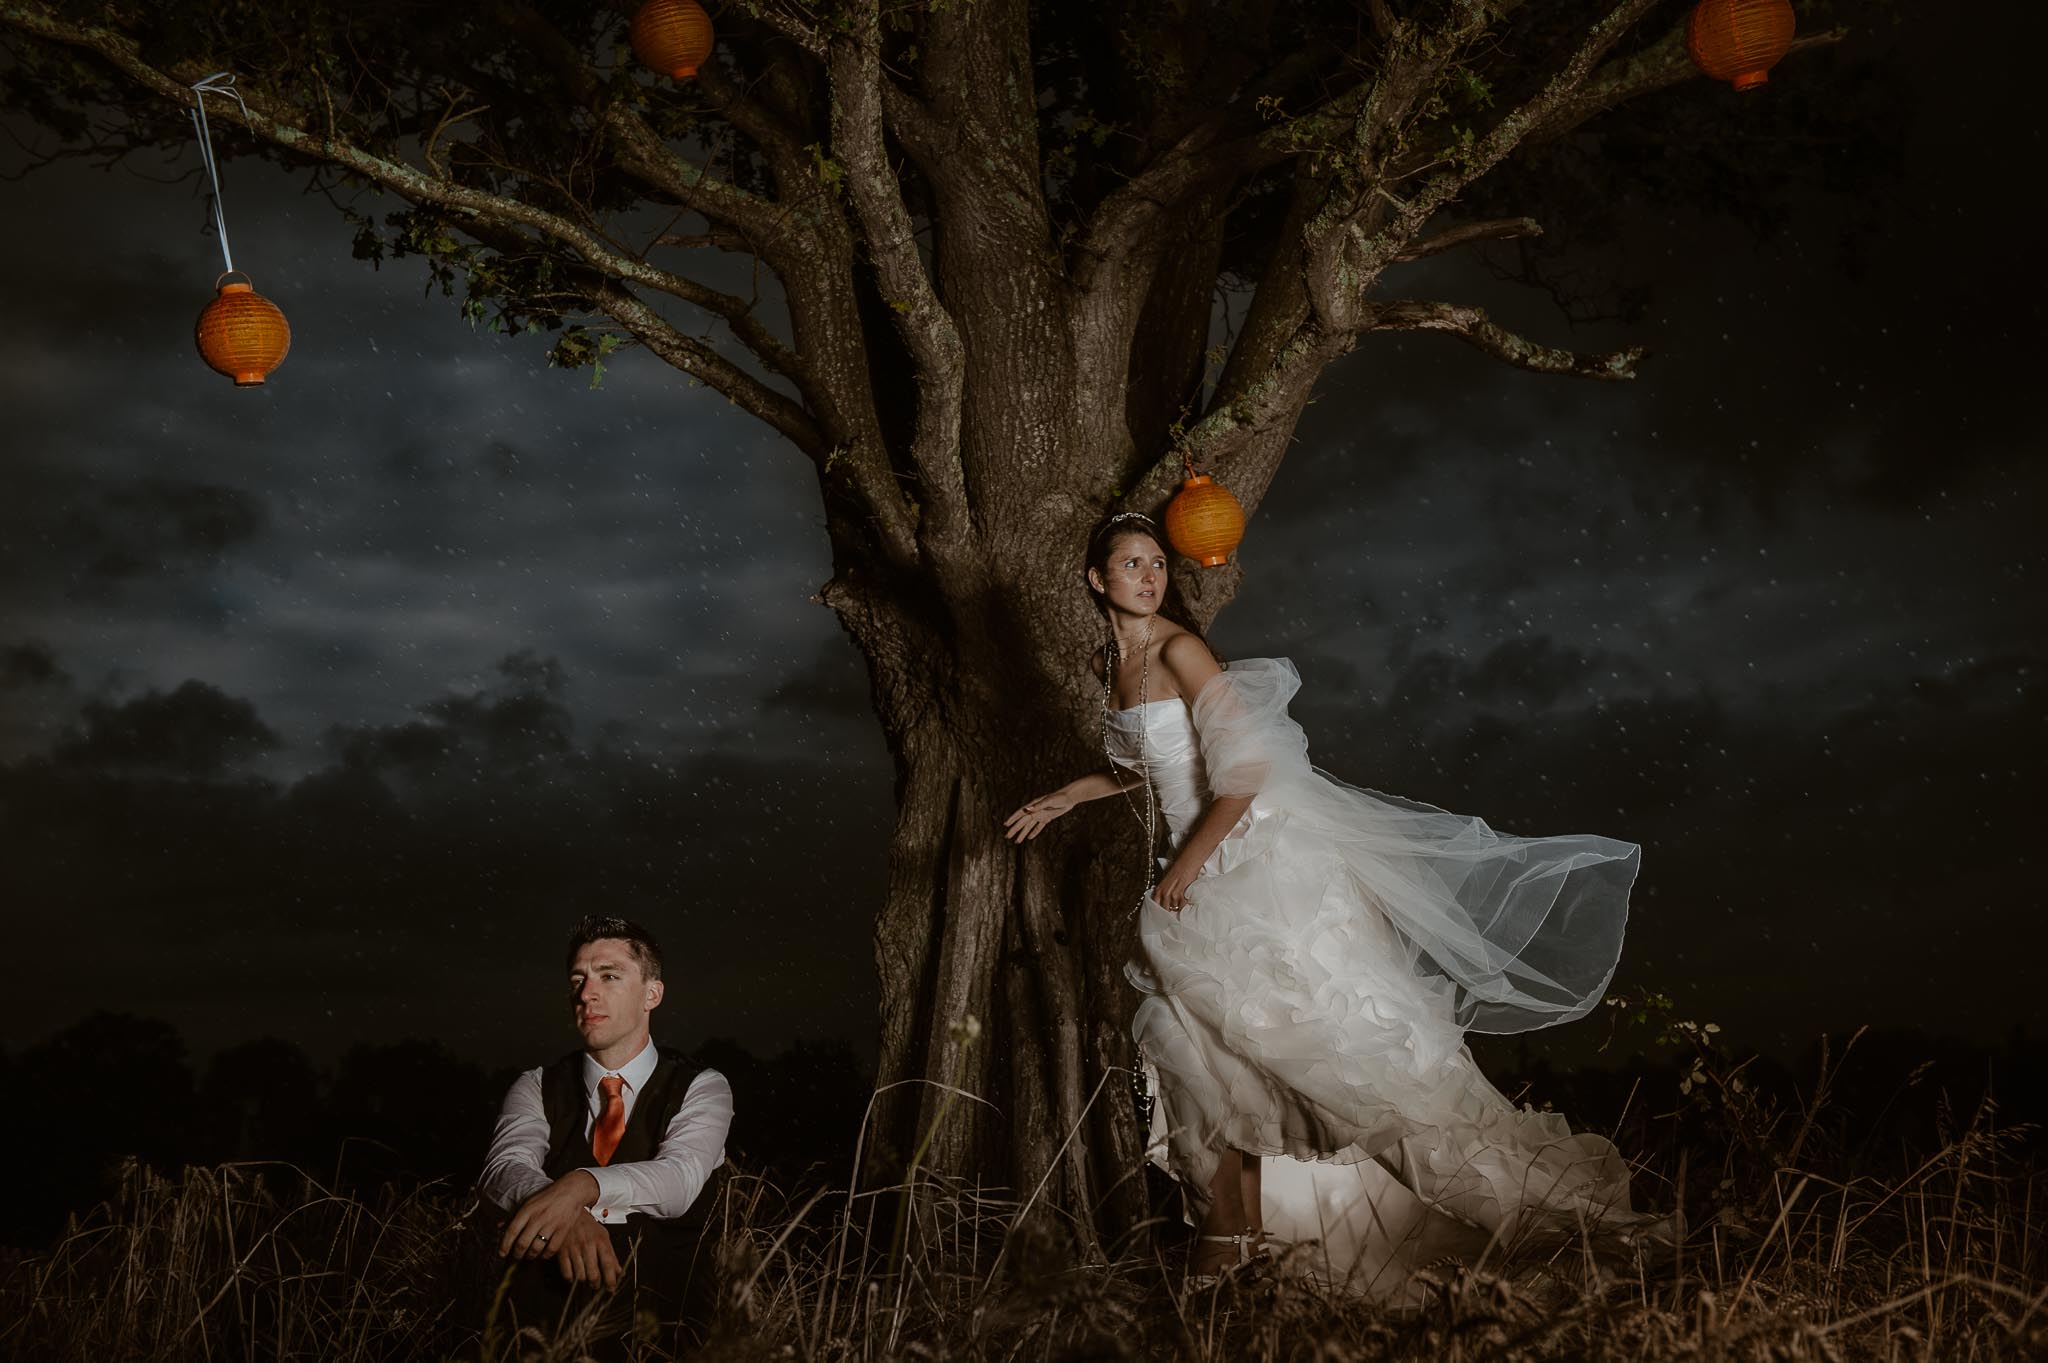 Séance couple après mariage fantastique & poétique inspirée Tim Burton près de Nantes par Geoffrey Arnoldy photographe